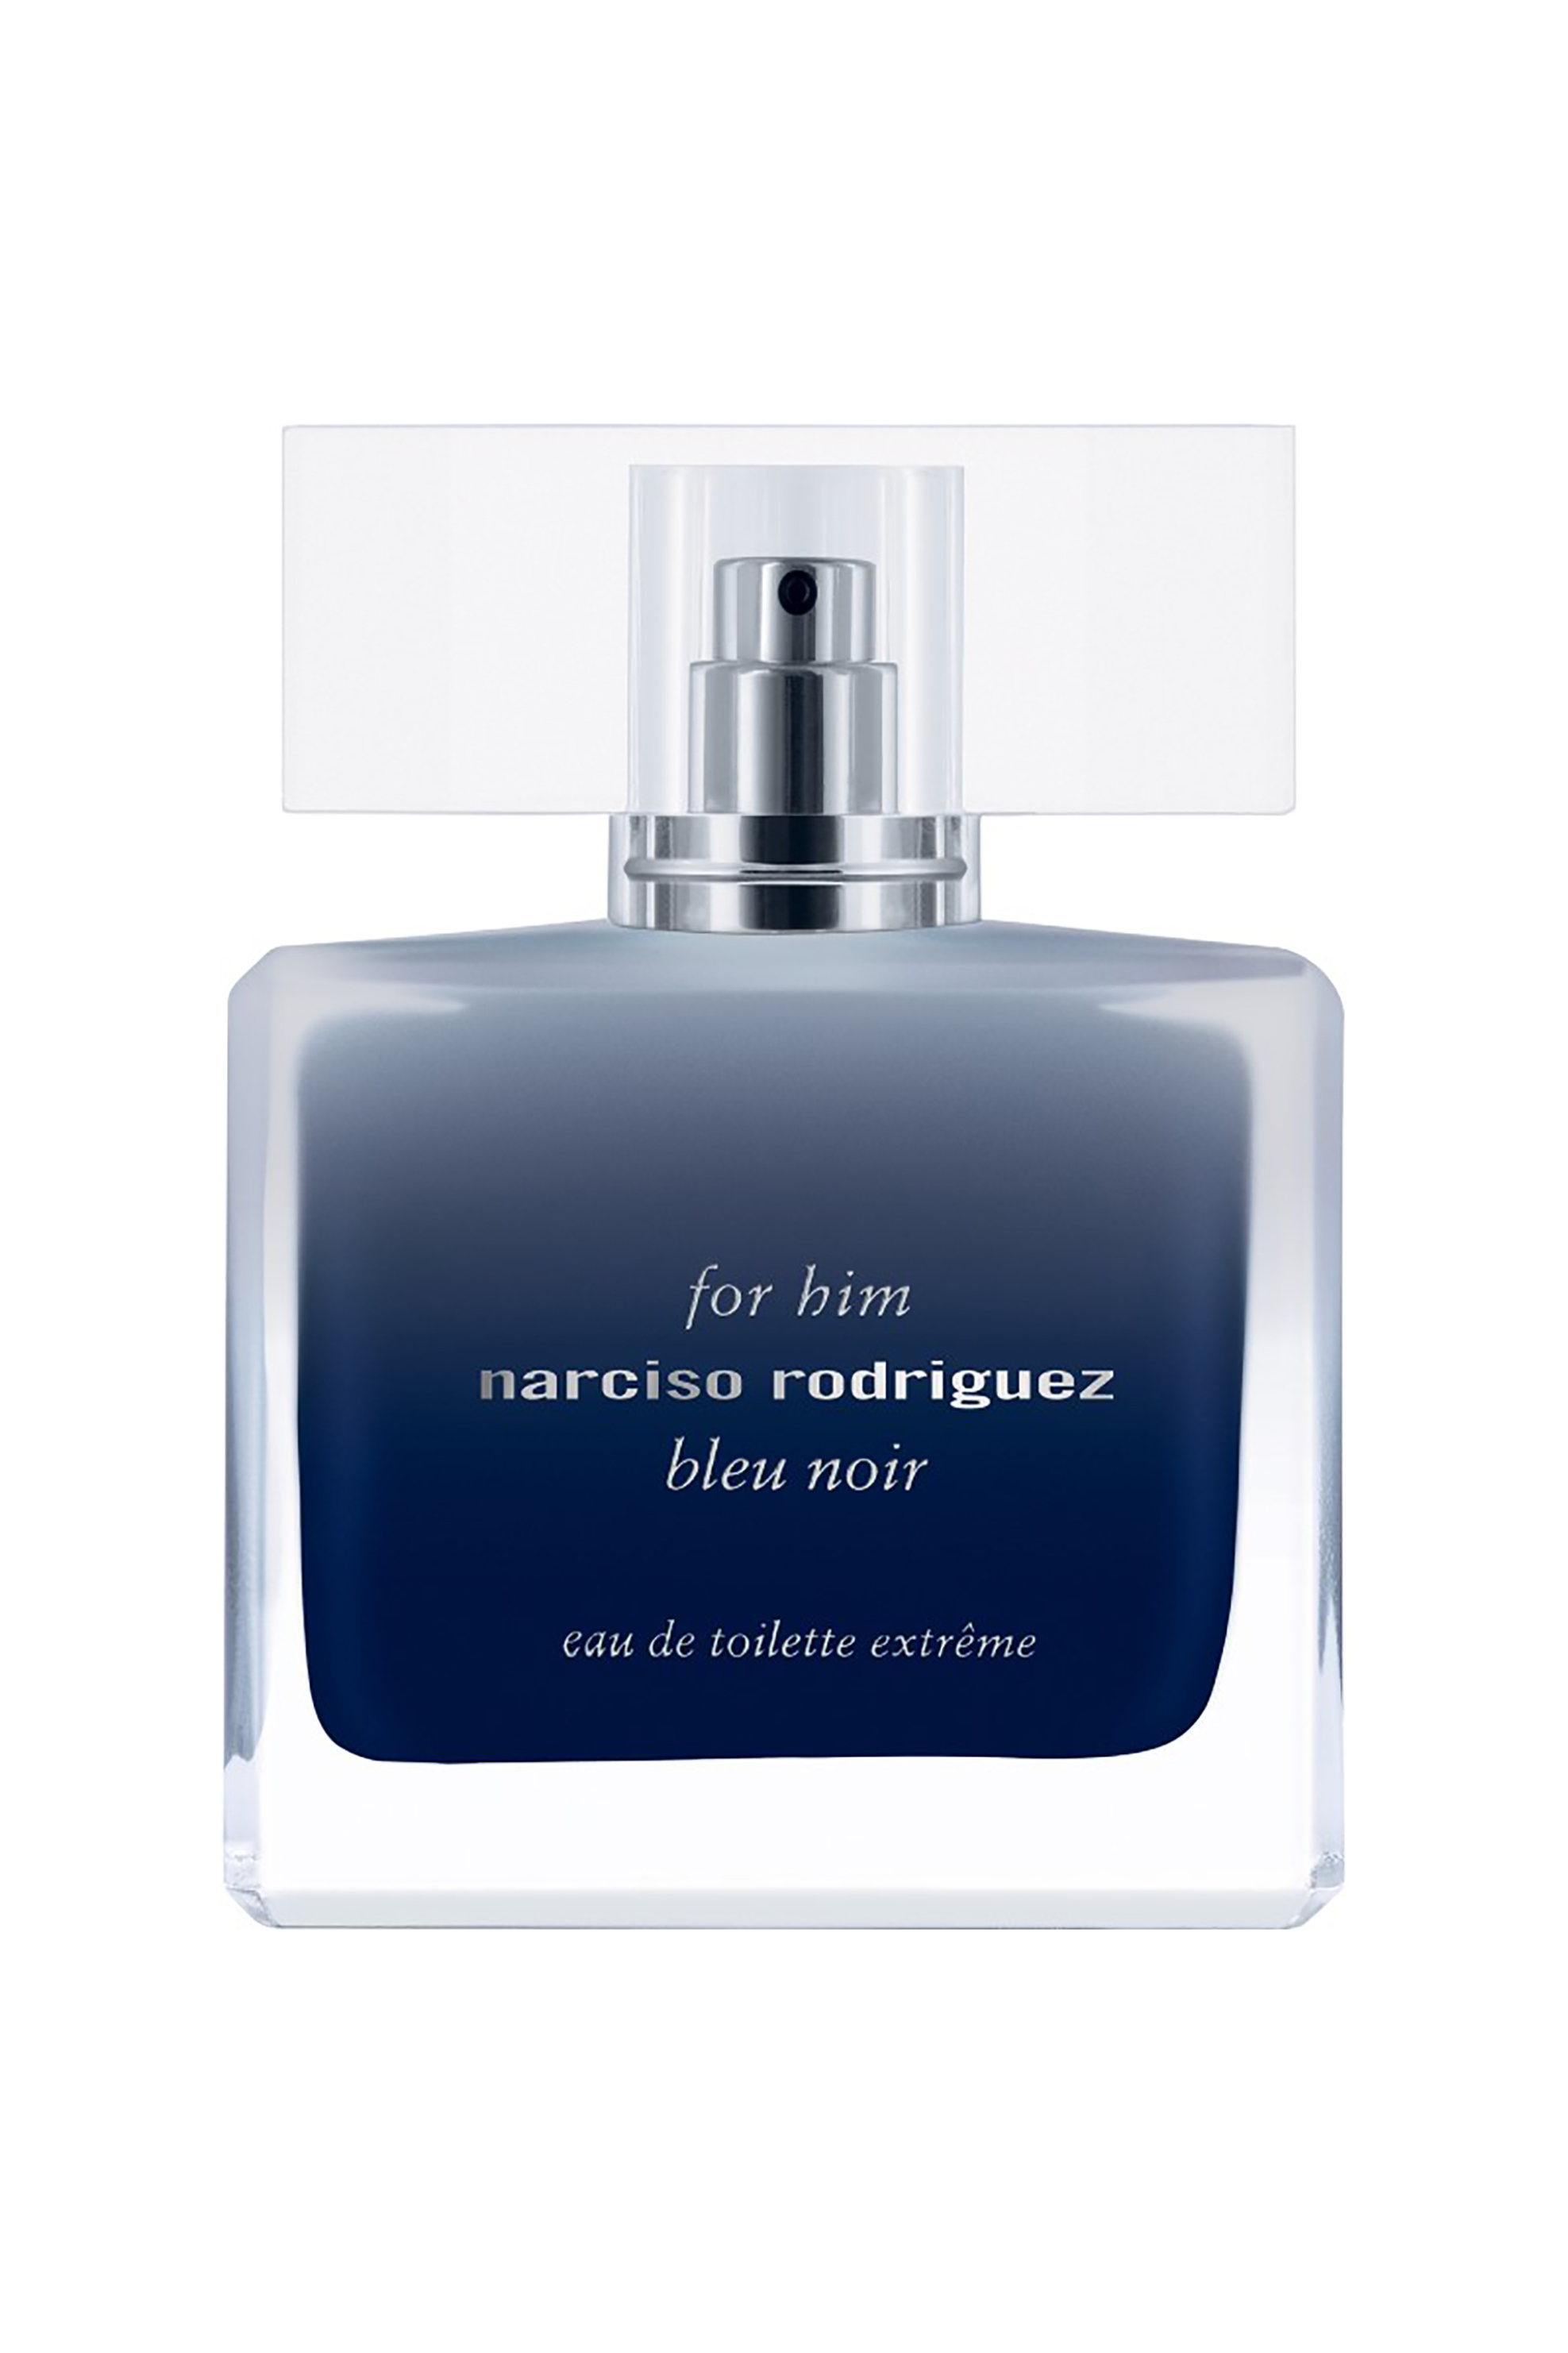 Narciso Rodriguez For Him Bleu Noir Eau de Toilette Extreme - 89990500000 1056542